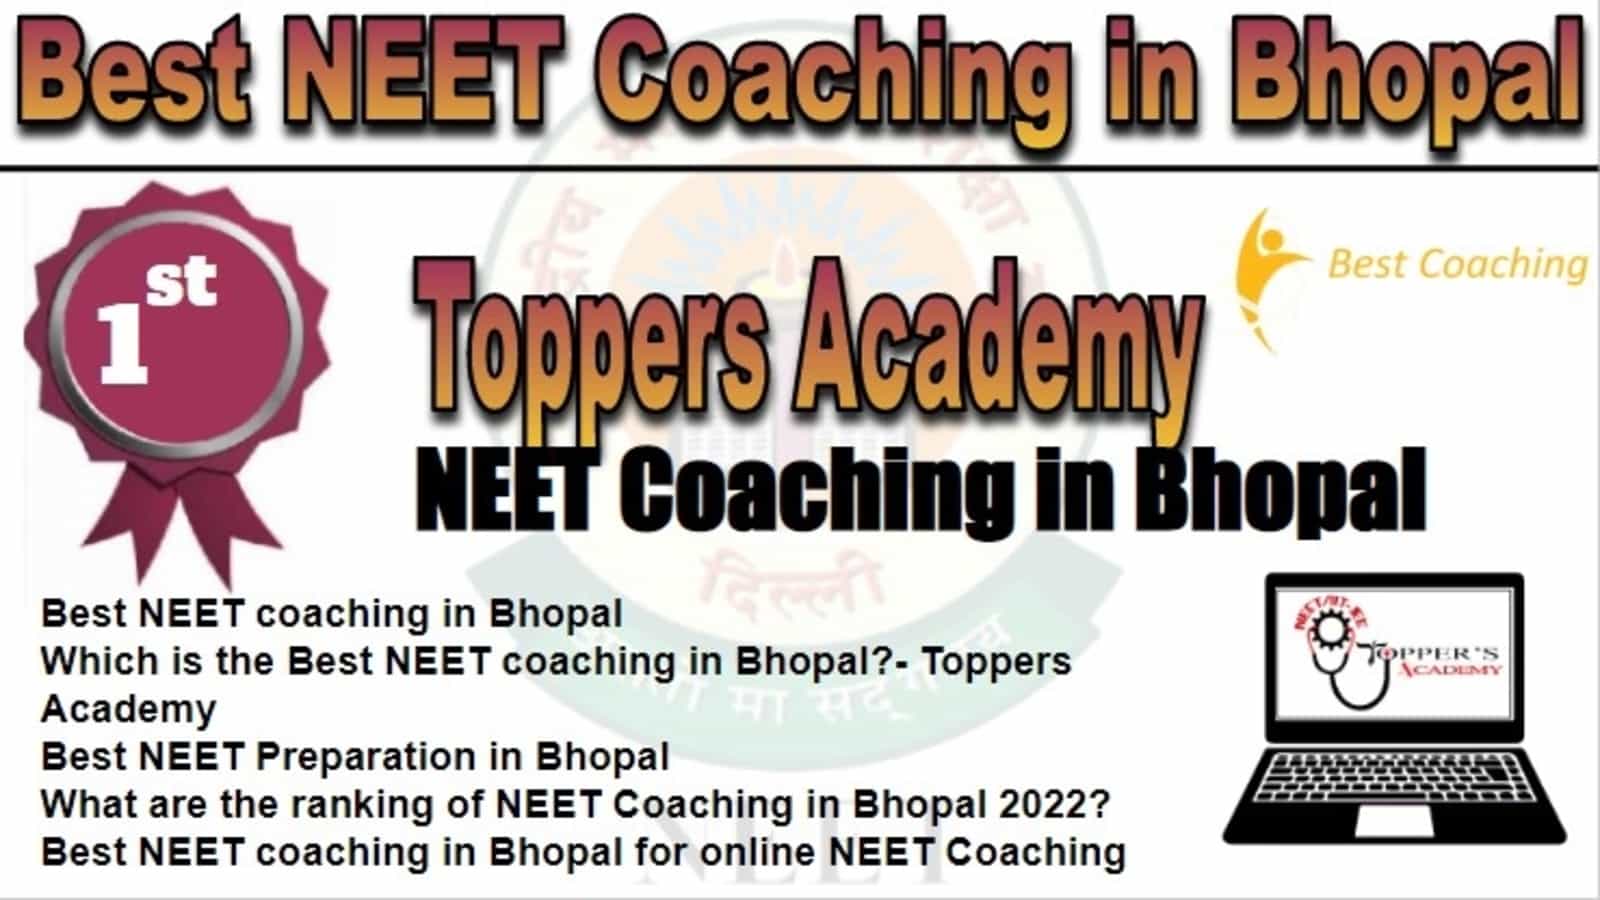 Rank 1 Best NEET Coaching in Bhopal